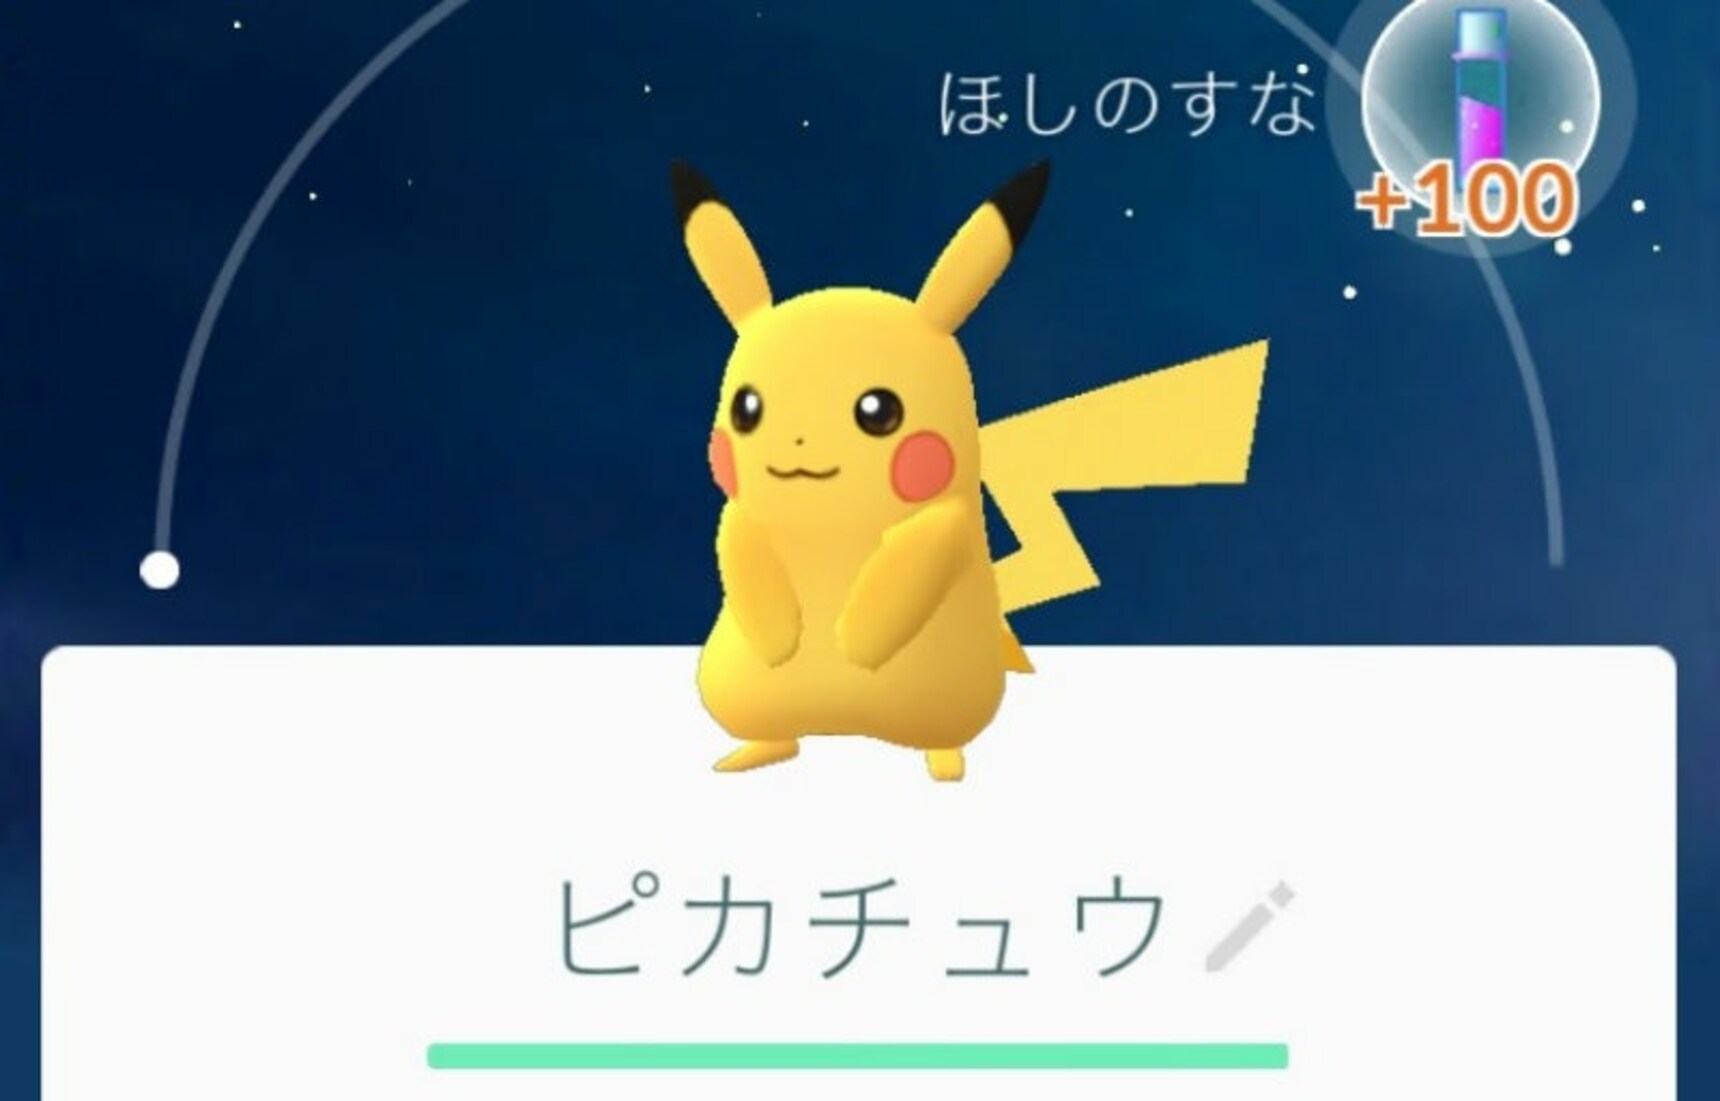 How to Start with Pikachu in Pokémon Go